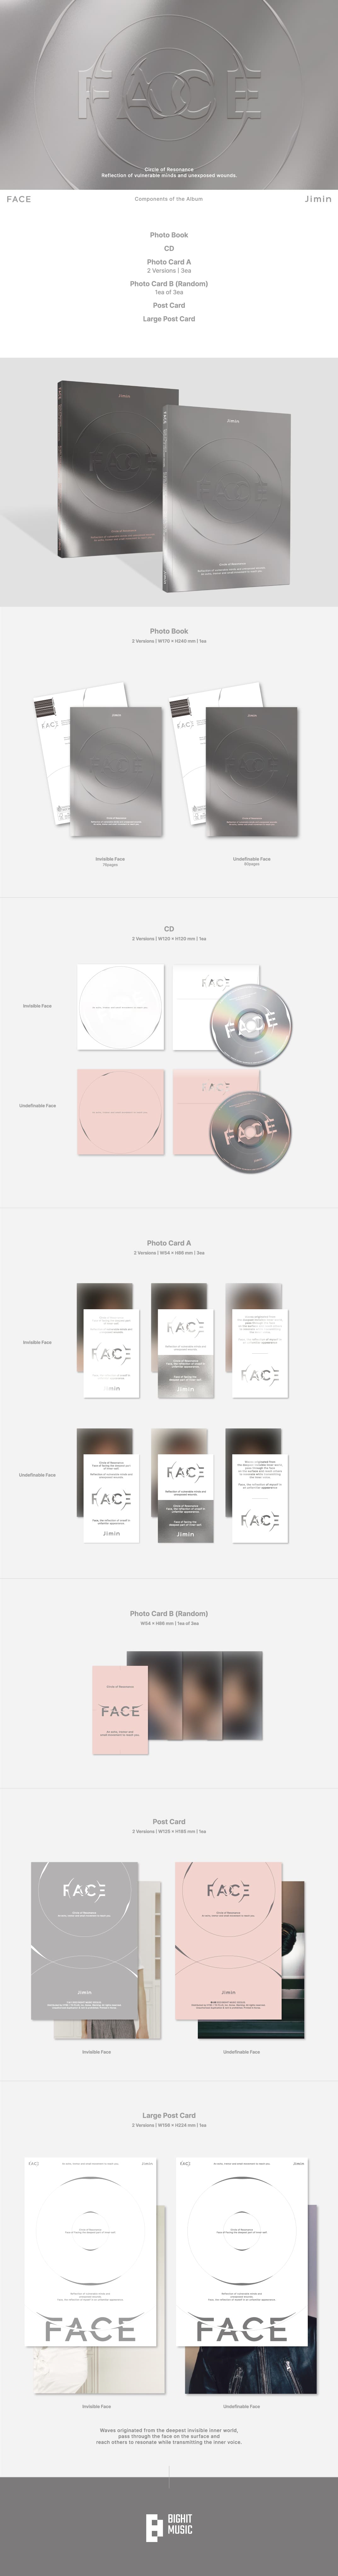 Jimin of BTS 1st Solo Album: Face